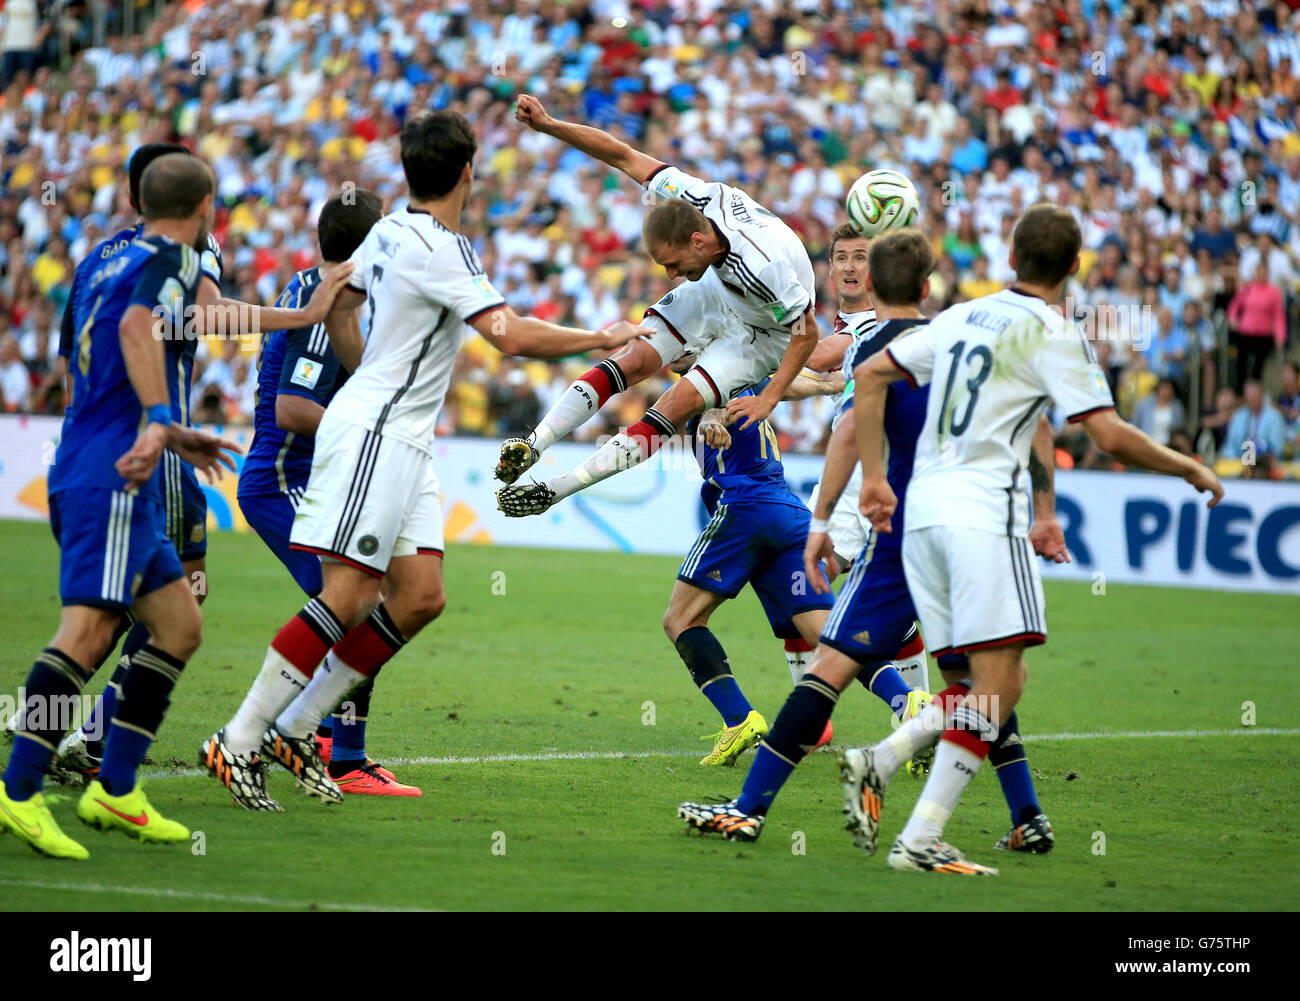 Football - coupe du monde de la FIFA 2014 - finale - Allemagne / Argentine - Estadio do Maracana.Action dans la boîte comme Benedikt Howedes en Allemagne a un en-tête sur la cible Banque D'Images